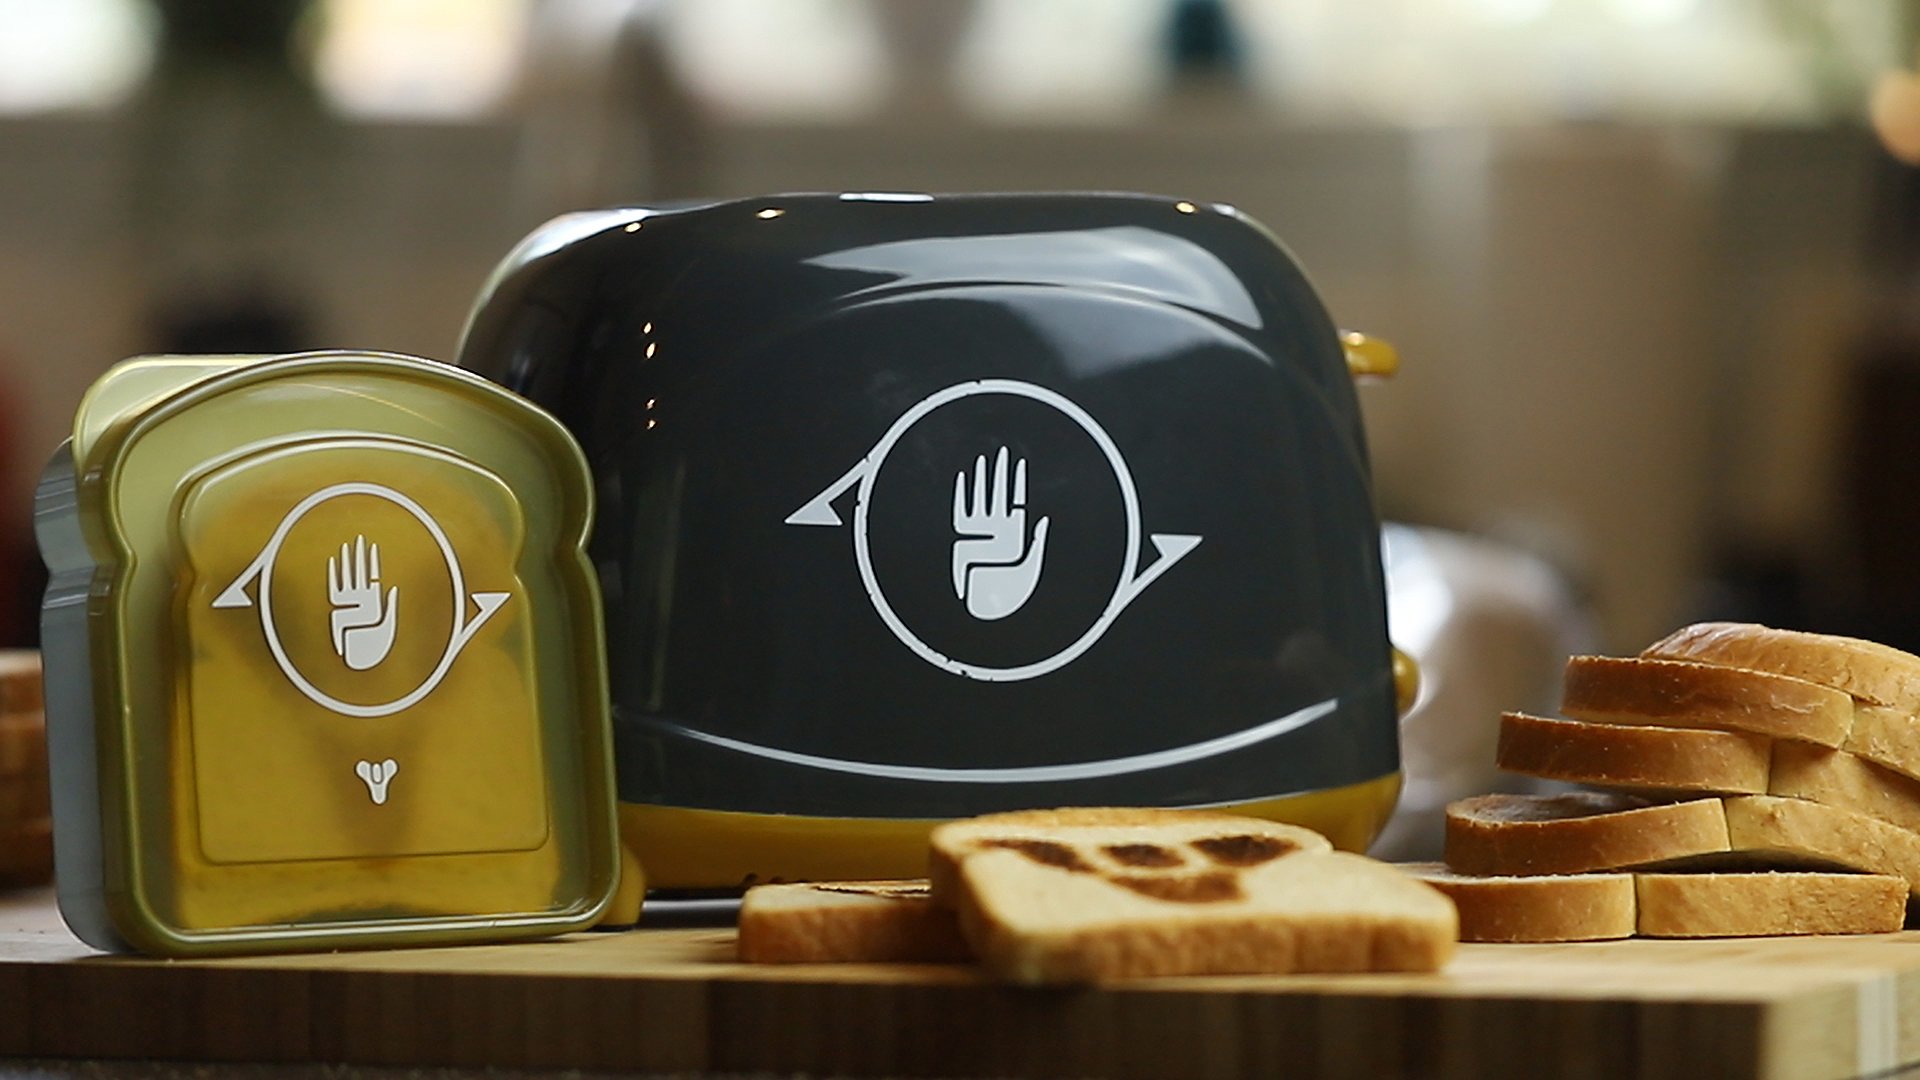 Bungie начала продавать тостер в стиле игры Destiny